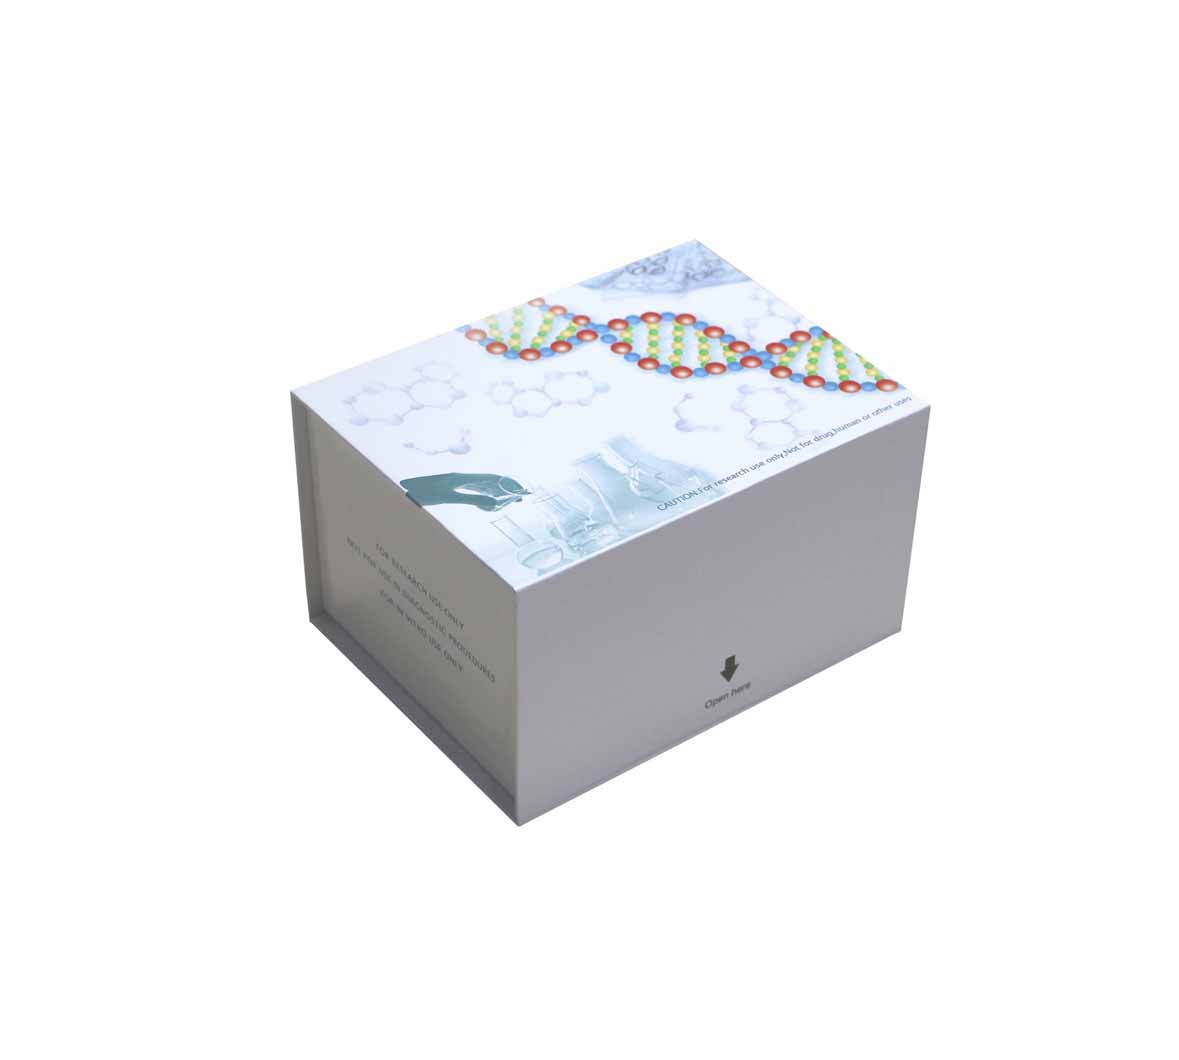 鱼腺苷酸脱氨酶(ADA)ELISA测定试剂盒